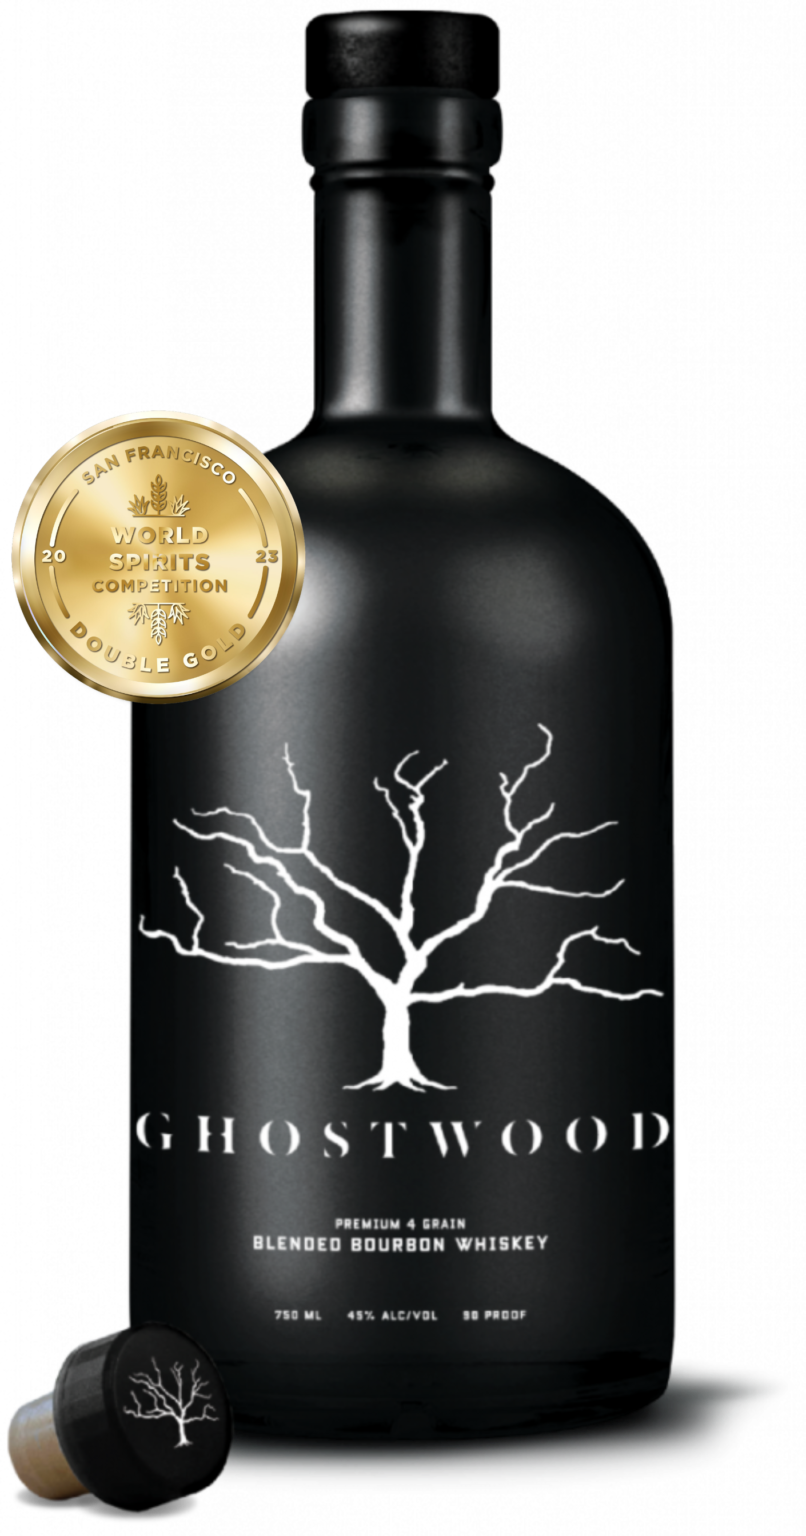 Ghostwood Blended Bourbon Whiskey